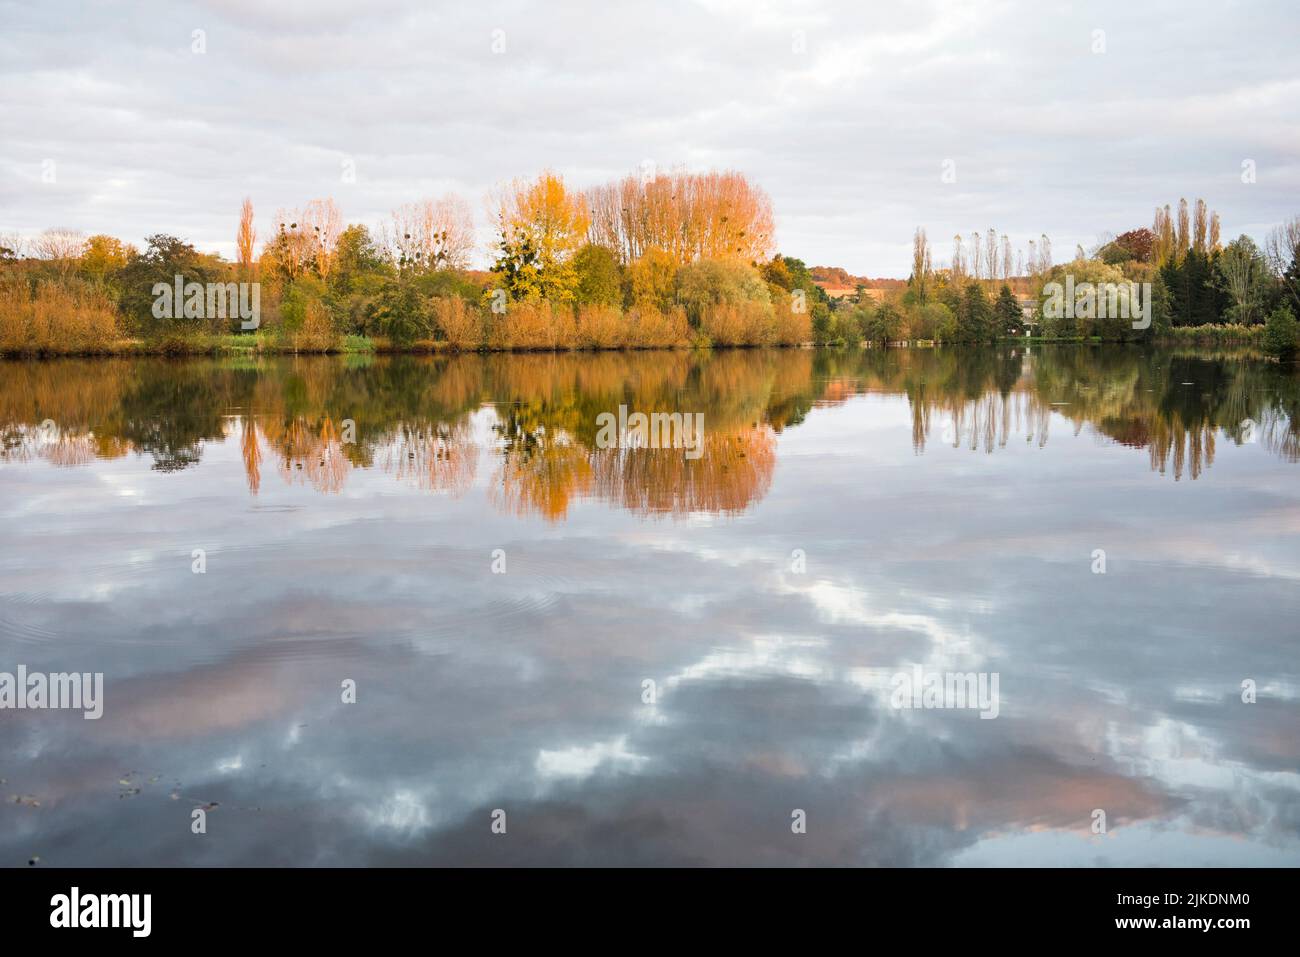 Pond of Chandelles by the Eure River, Eure-et-Loir department, Centre-Val-de-Loire region, France, Europe. Stock Photo